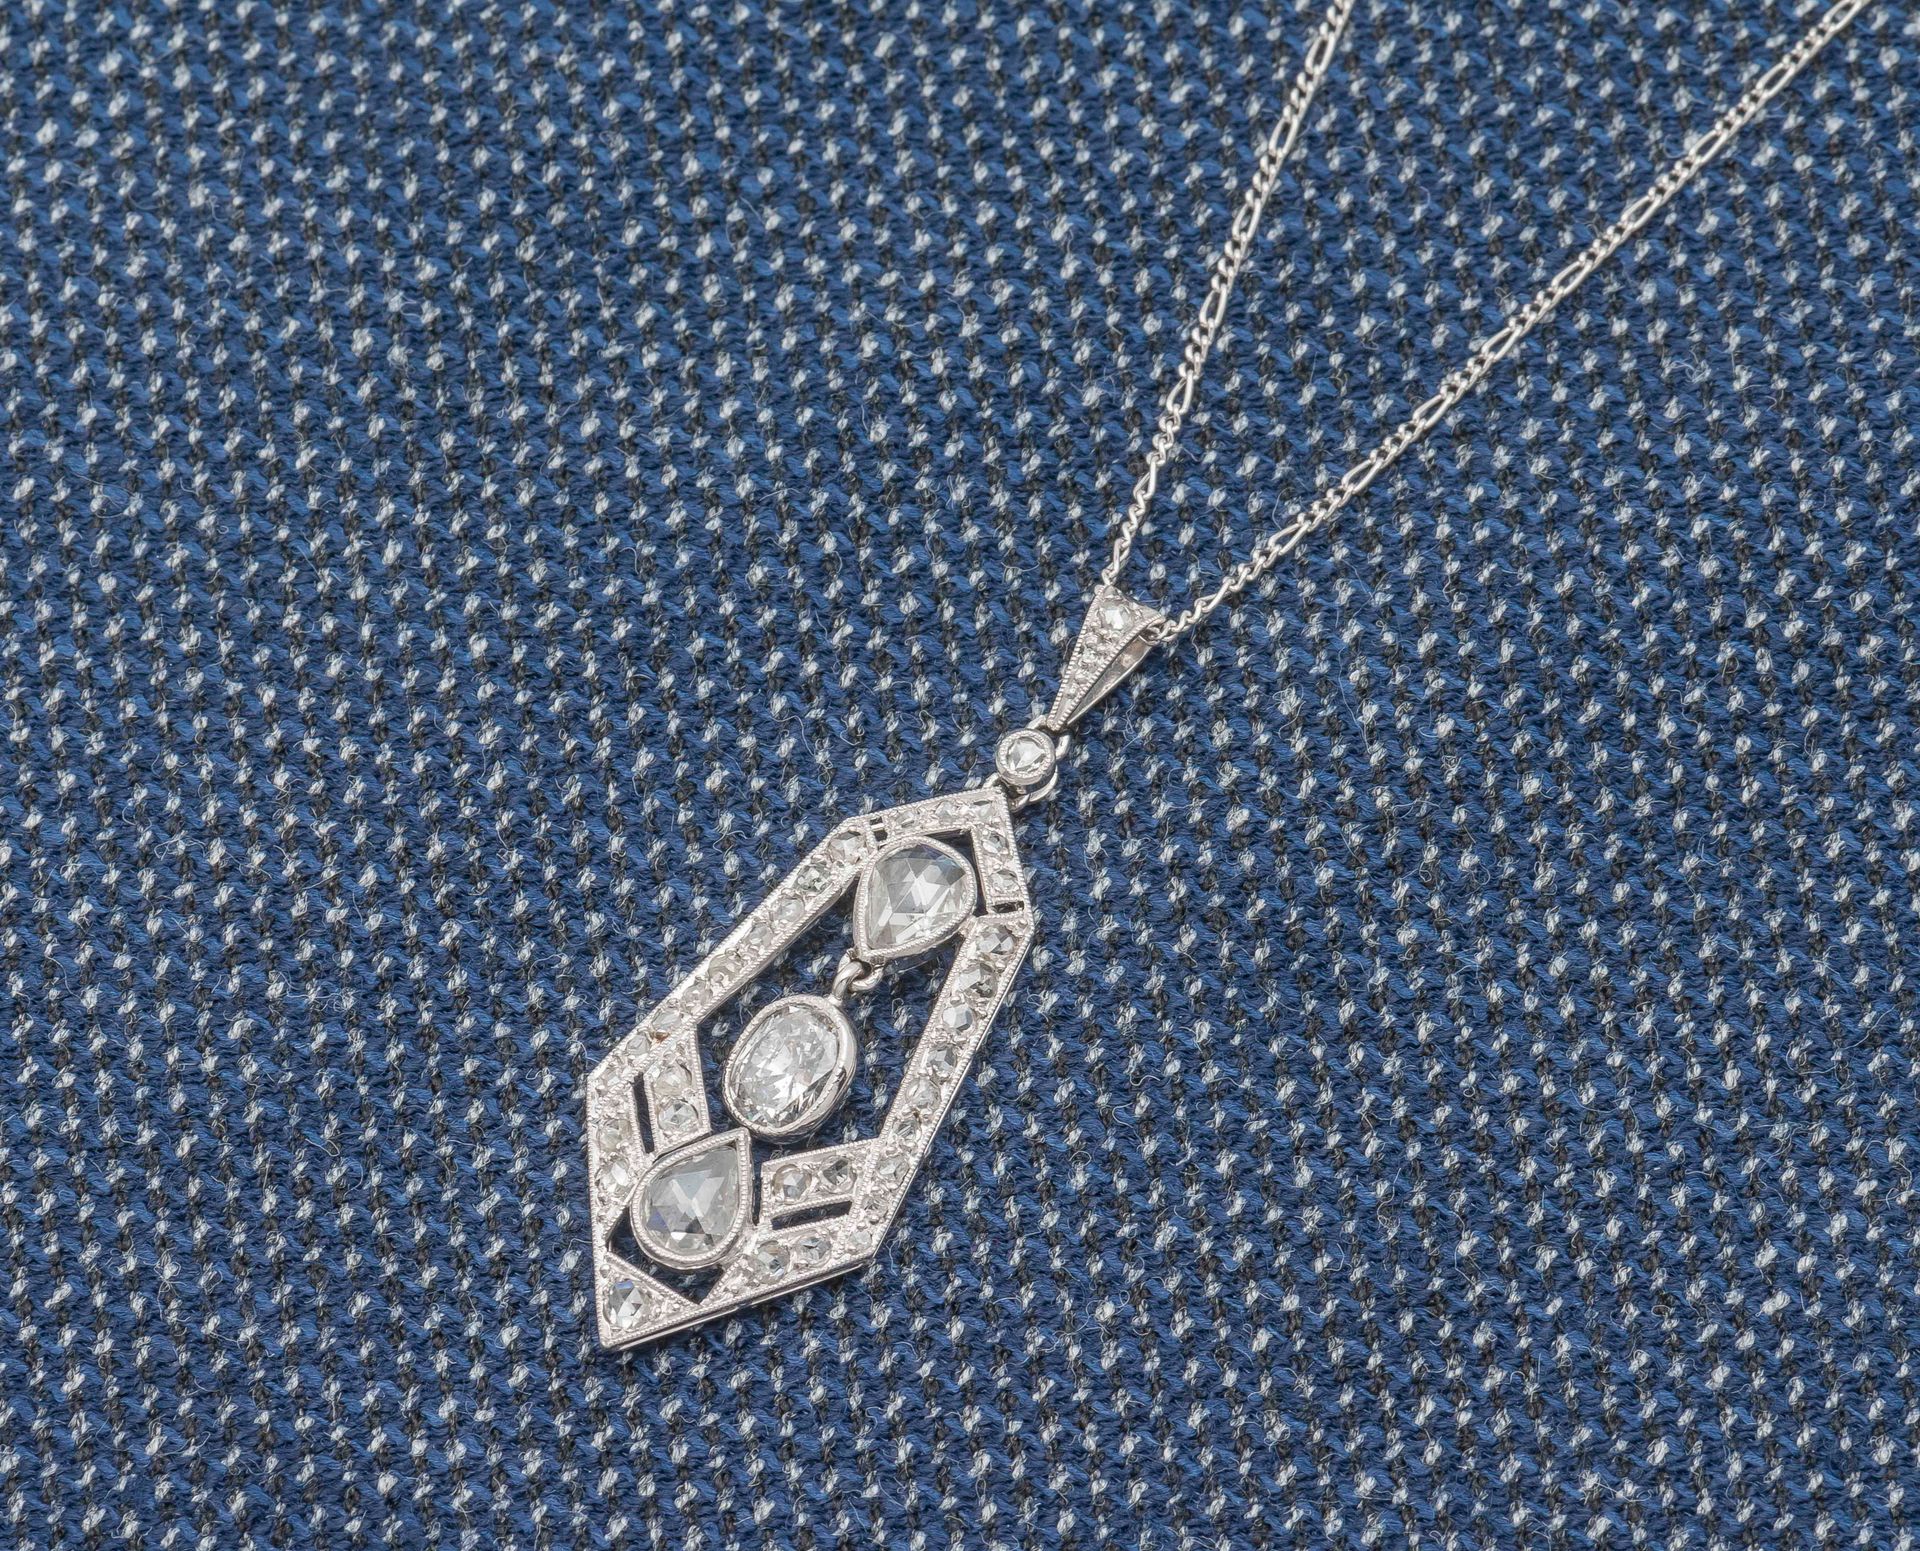 Null 铂金（950‰）链条和吊坠绘制了一个镂空点，镶嵌了两颗重约0.20克拉的梨形钻石和一颗重约0.50克拉的椭圆形钻石的流苏。1910年左右的法国作品。
&hellip;